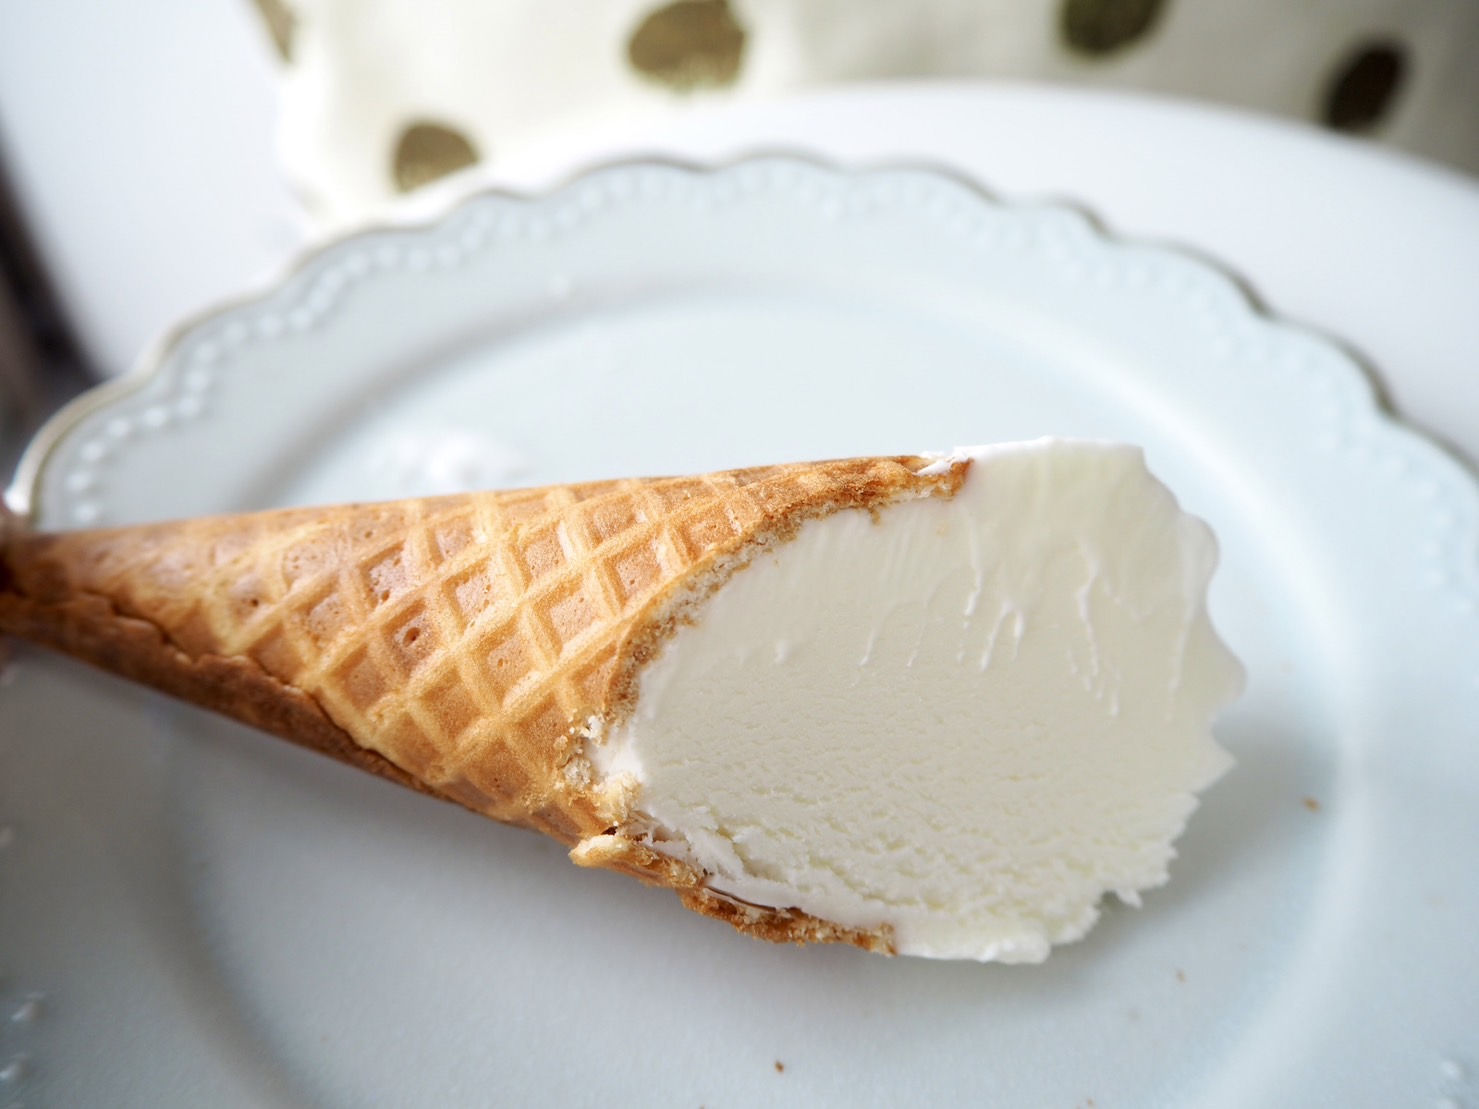 フランス産3種のクリームチーズソフト
断面写真